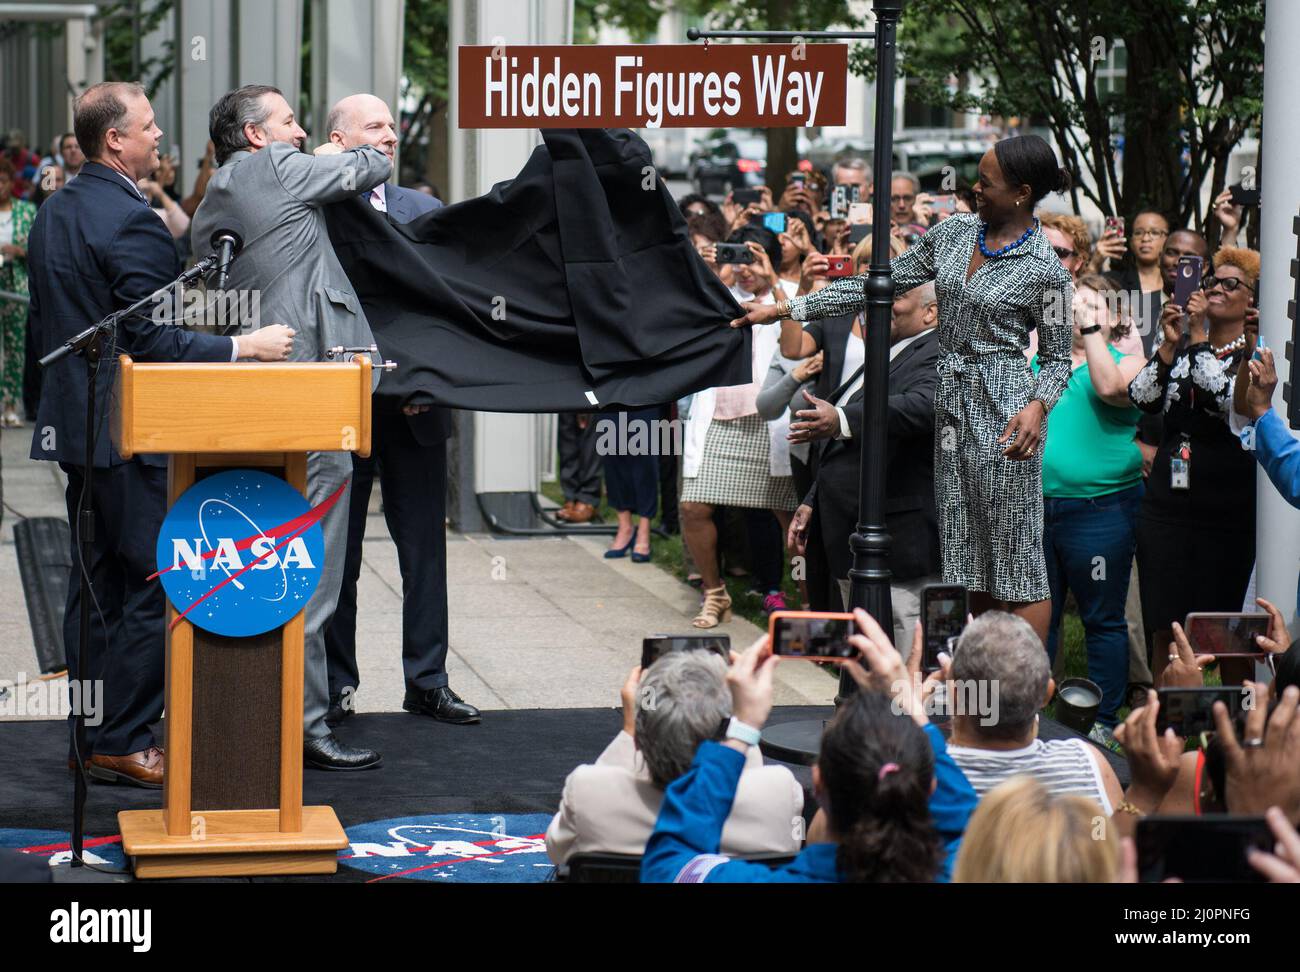 Amministratore della NASA Jim Bridenstine, a sinistra, senatore degli Stati Uniti Ted Cruz, R-Texas, secondo da sinistra, Presidente del Consiglio del D.C. Phil Mendelson, terzo da sinistra, E Margot Lee Shetterly, autore del libro 'Hidden Figures', a destra, svelare il cartello stradale 'Hidden Figures Way' in una cerimonia di dedicazione, mercoledì 12 giugno 2019 presso la sede centrale della NASA a Washington, DC. Il blocco 300 di e Street SW di fronte alla sede centrale della NASA è stato designato come "Hidden Figures Way" per onorare Katherine Johnson, Dorthy Vaughan, Mary Jackson e tutte le donne che hanno dedicato la loro vita a servire onorabilmente il loro paese, Foto Stock